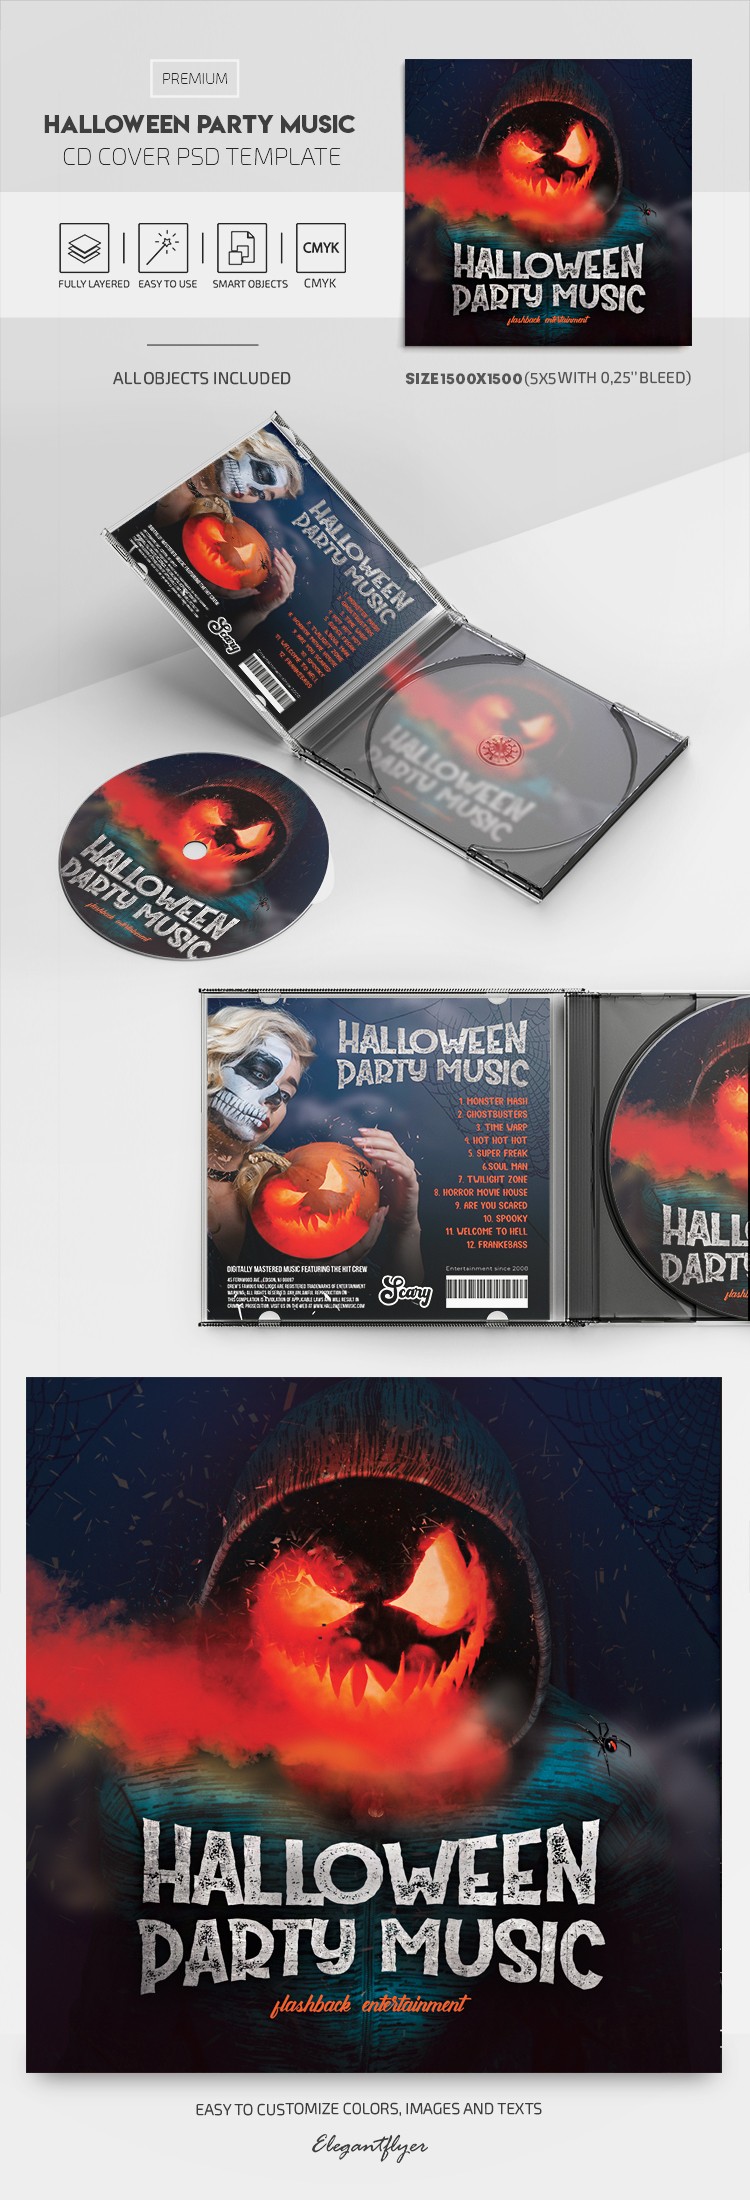 Couverture du CD de musique pour la fête d'Halloween by ElegantFlyer